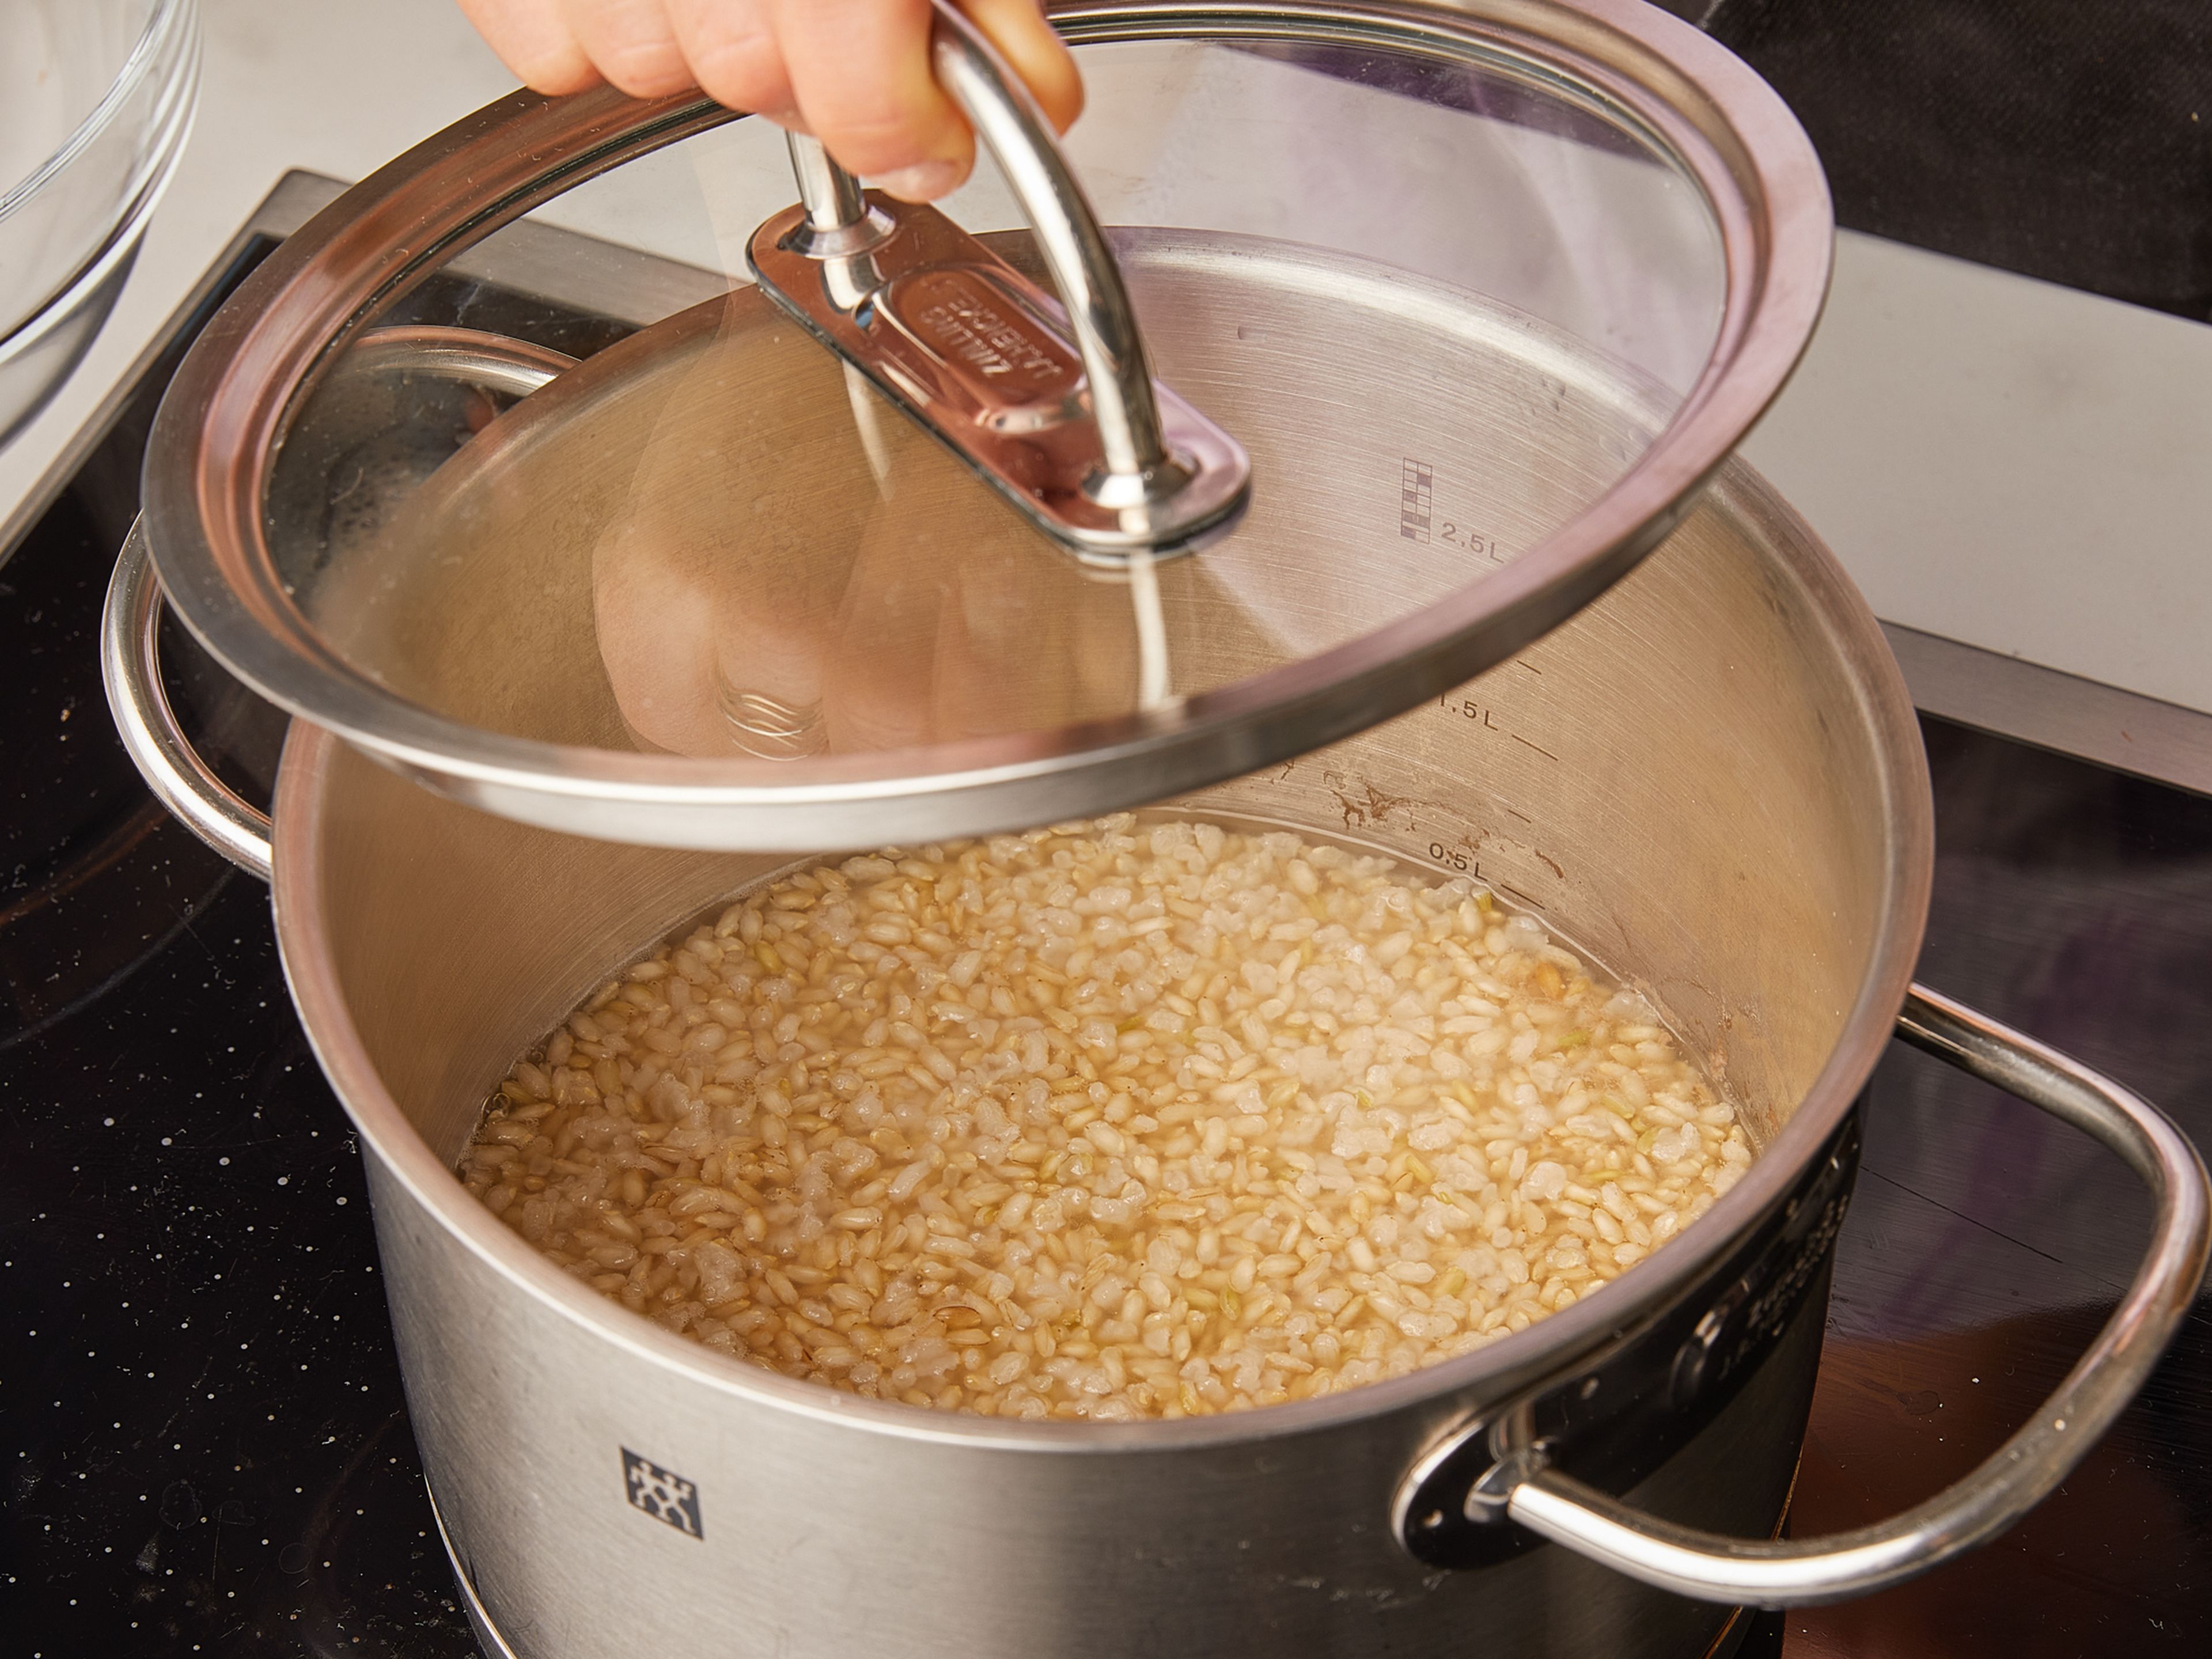 Wasche den Reis und gib ihn in einen Topf. Das Wasser und eine Prise Salz hinzufügen und einmal umrühren. Den Deckel aufsetzen und zum Kochen bringen. Die Hitze reduzieren und den Deckel drauflassen, dann ca. 15 Min. köcheln lassen. Einmal umrühren und die Konsistenz vom Reis prüfen: Wenn er noch leicht ungekocht und körnig ist, ist er fertig.